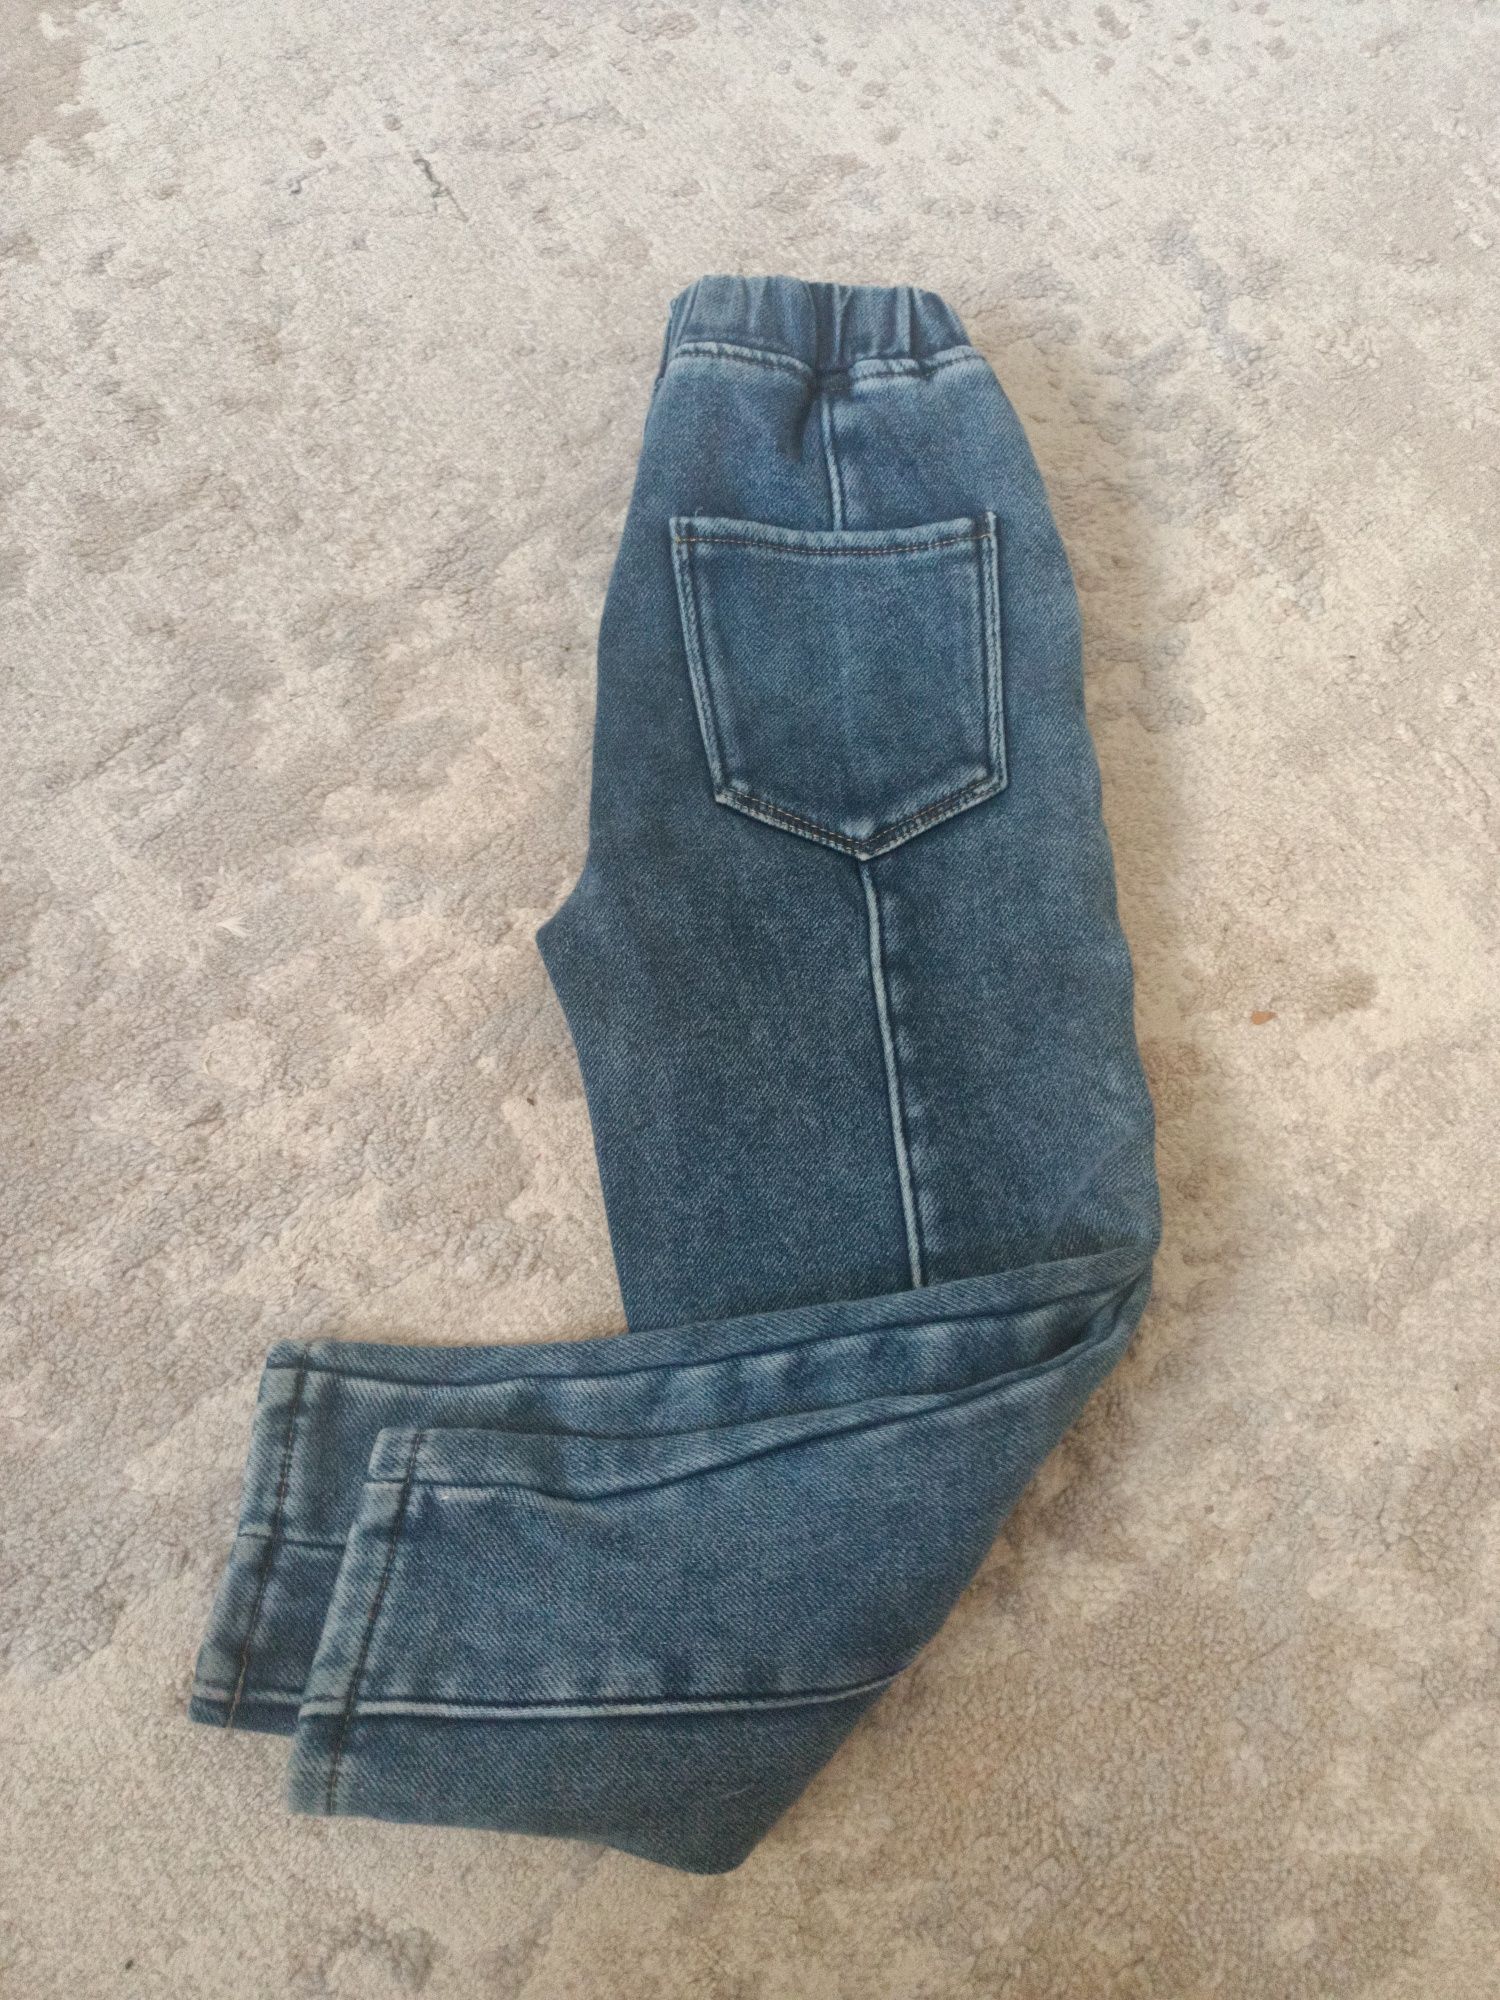 Продам джинсы утеплённые р.122-128